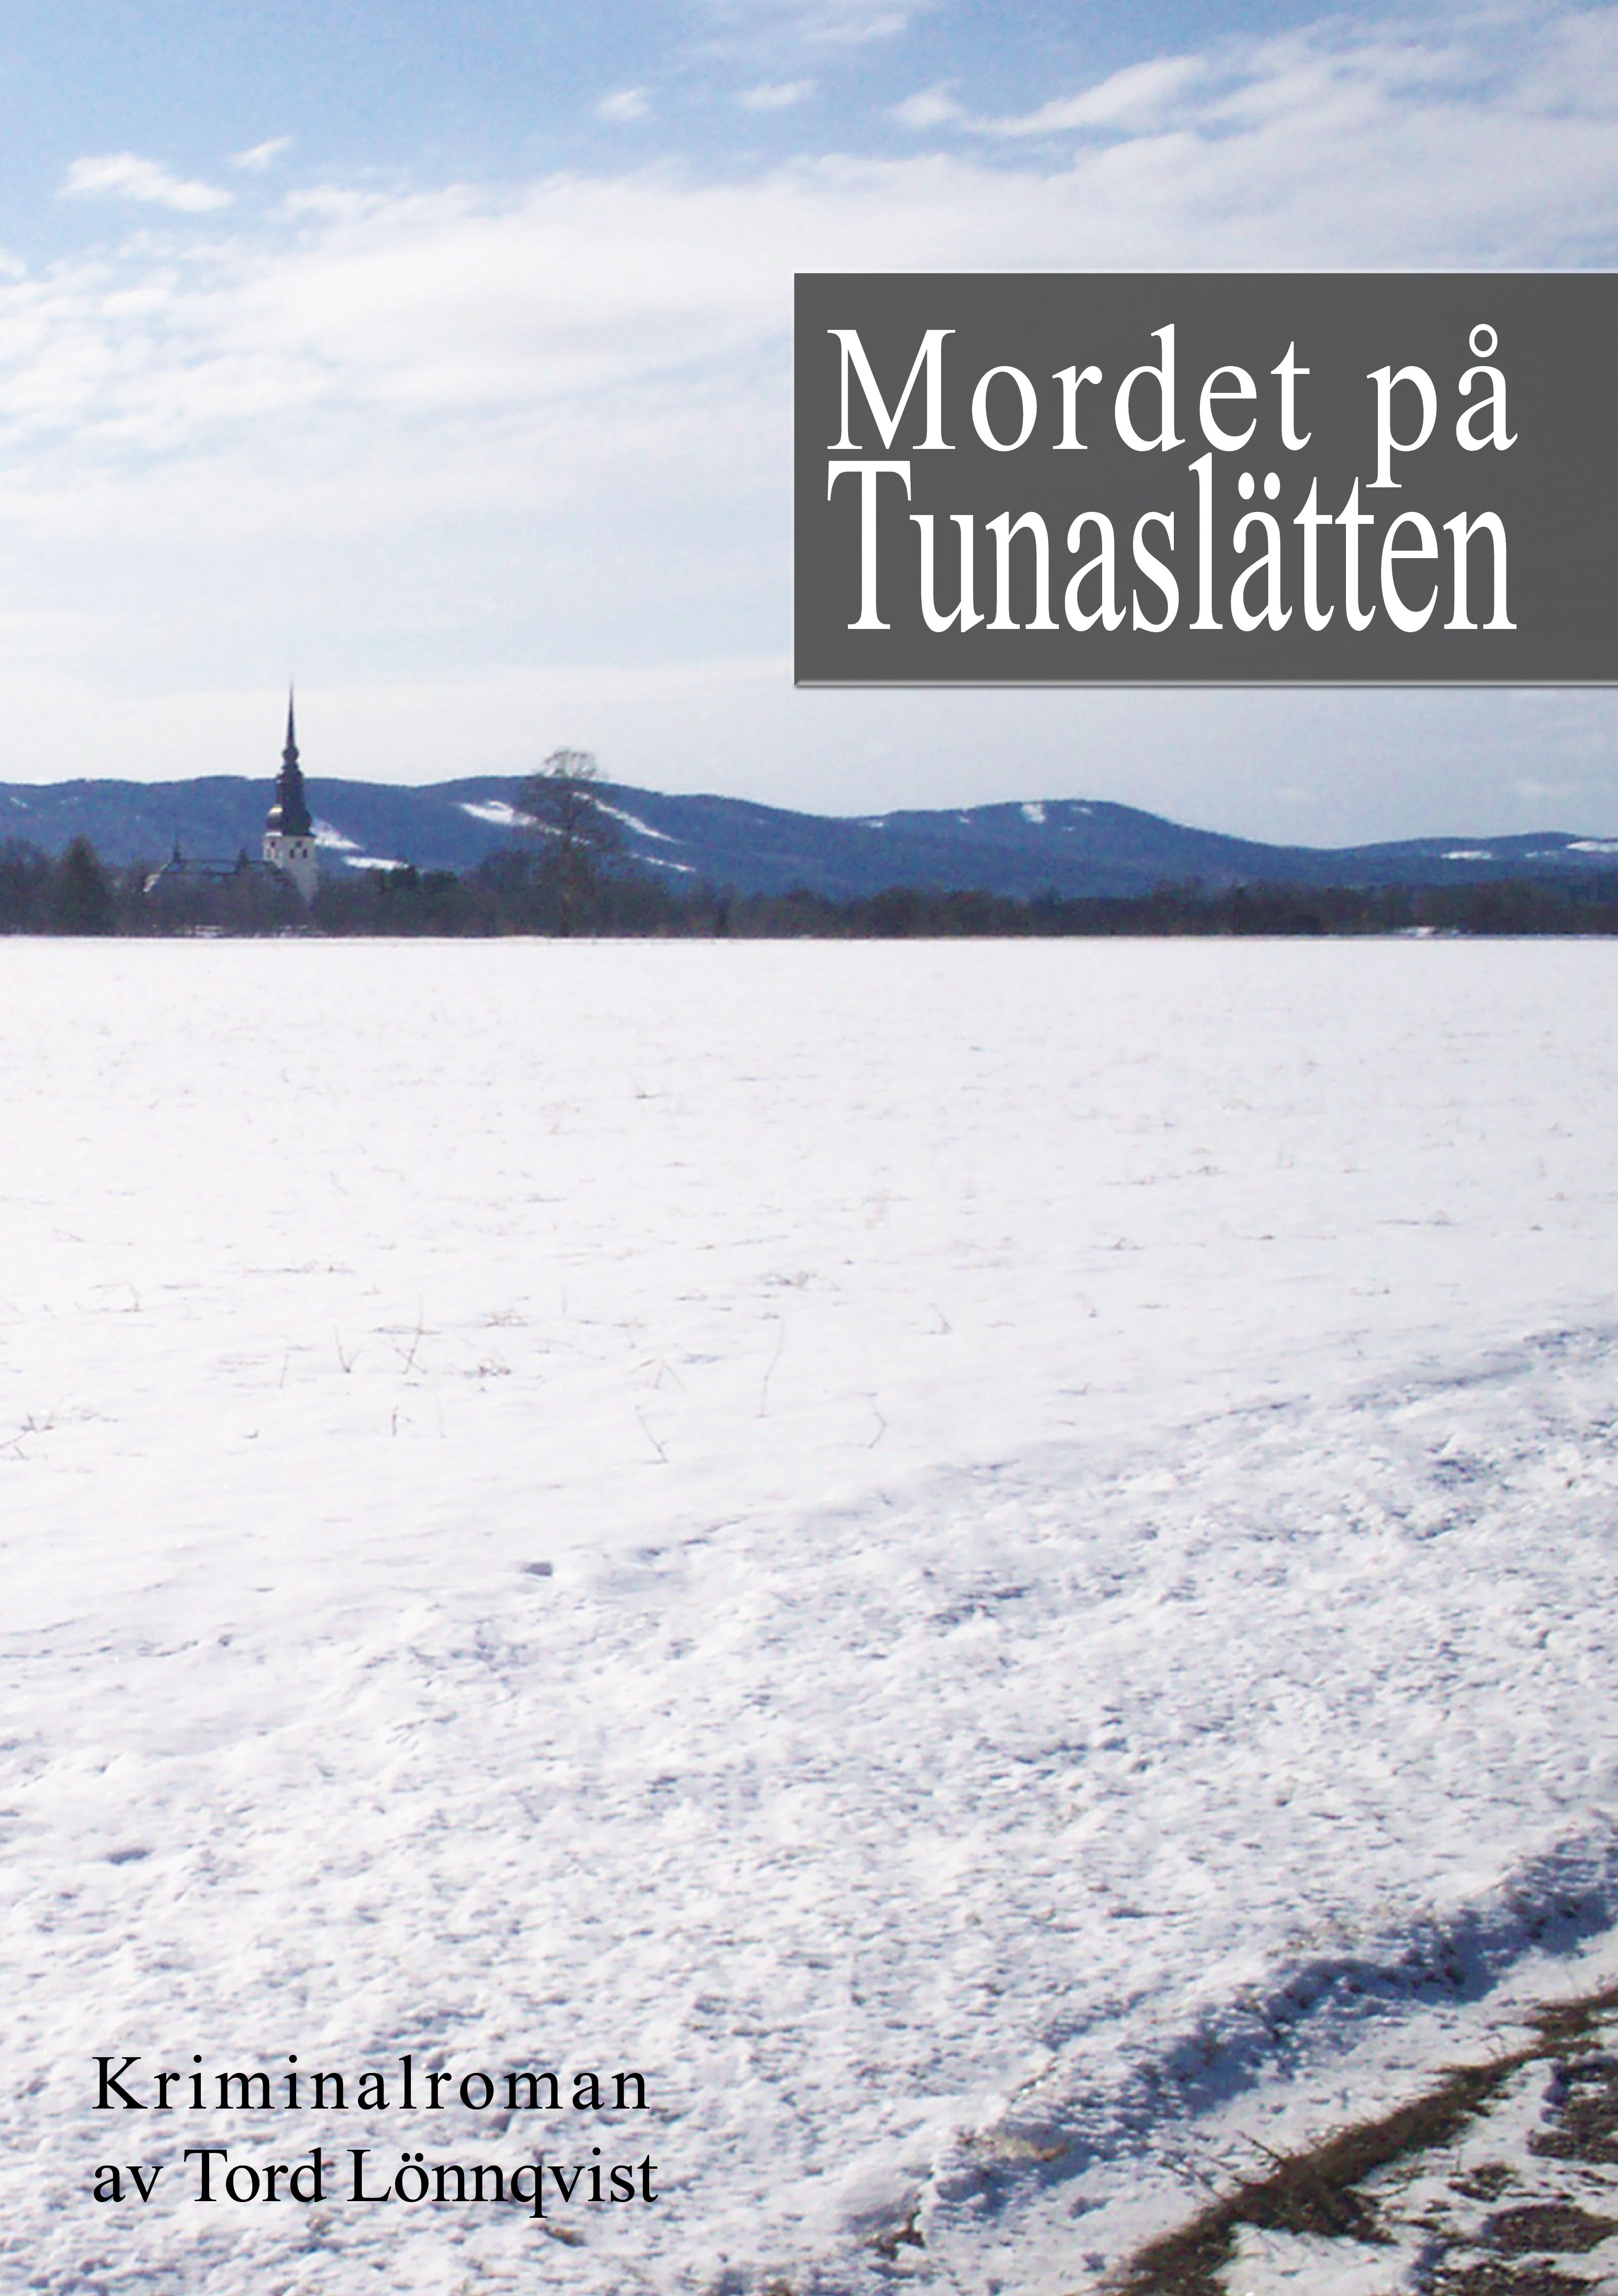 Mordet på Tunaslätten, e-bog af Tord Lönnqvist